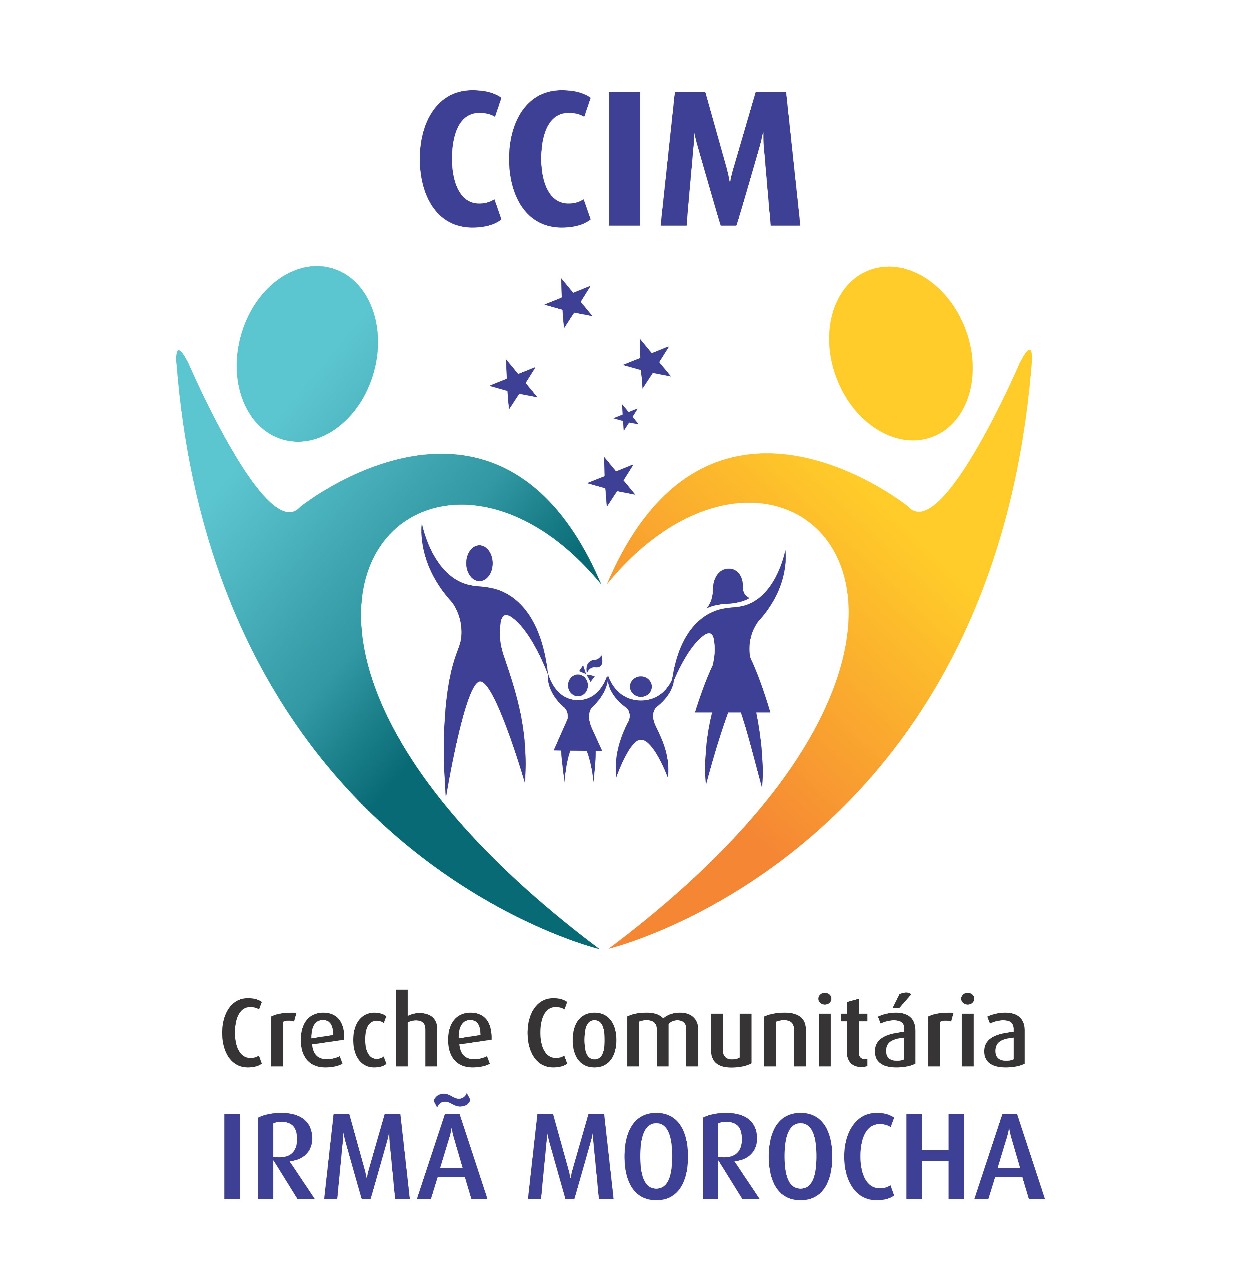 Logo Crecho CCIM Image 2017 10 17